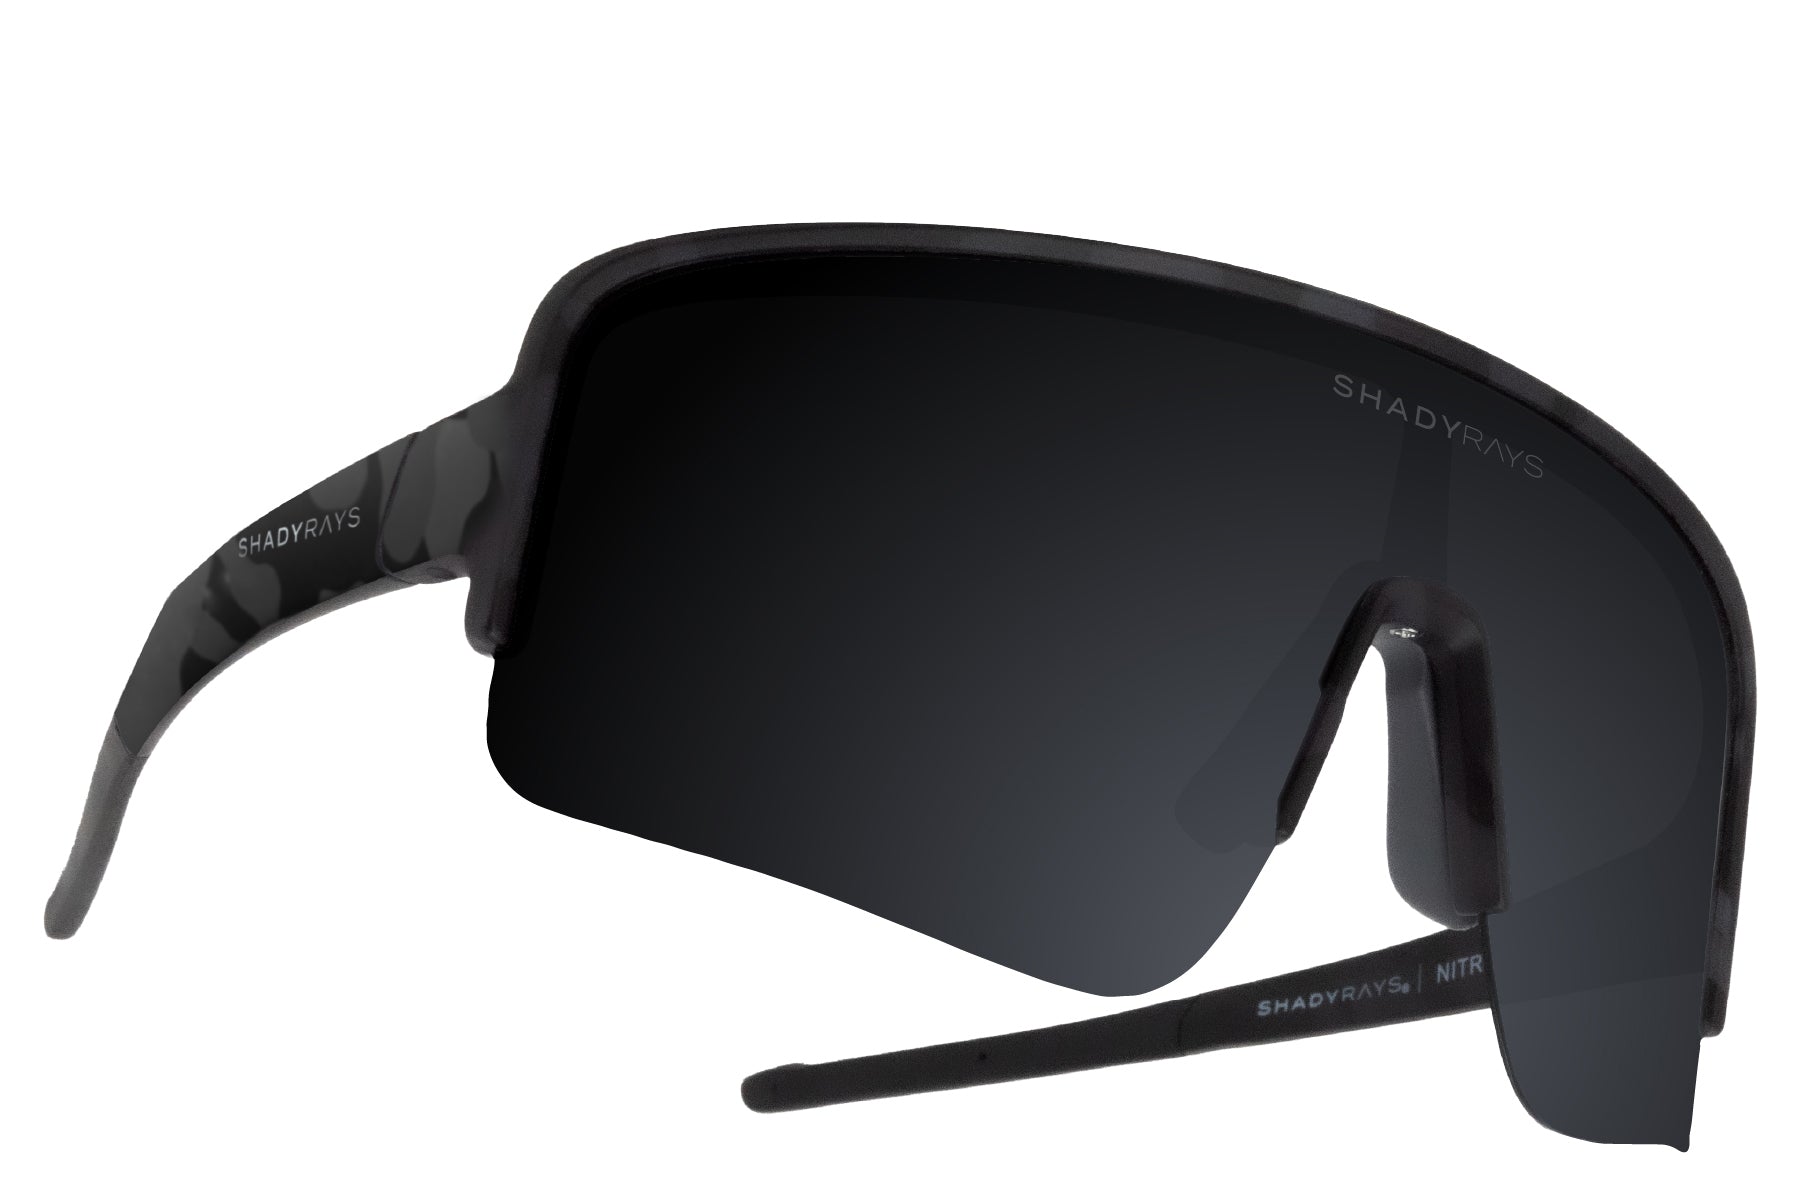 Shady Rays Nitro - Black Camo Polarized Sunglasses